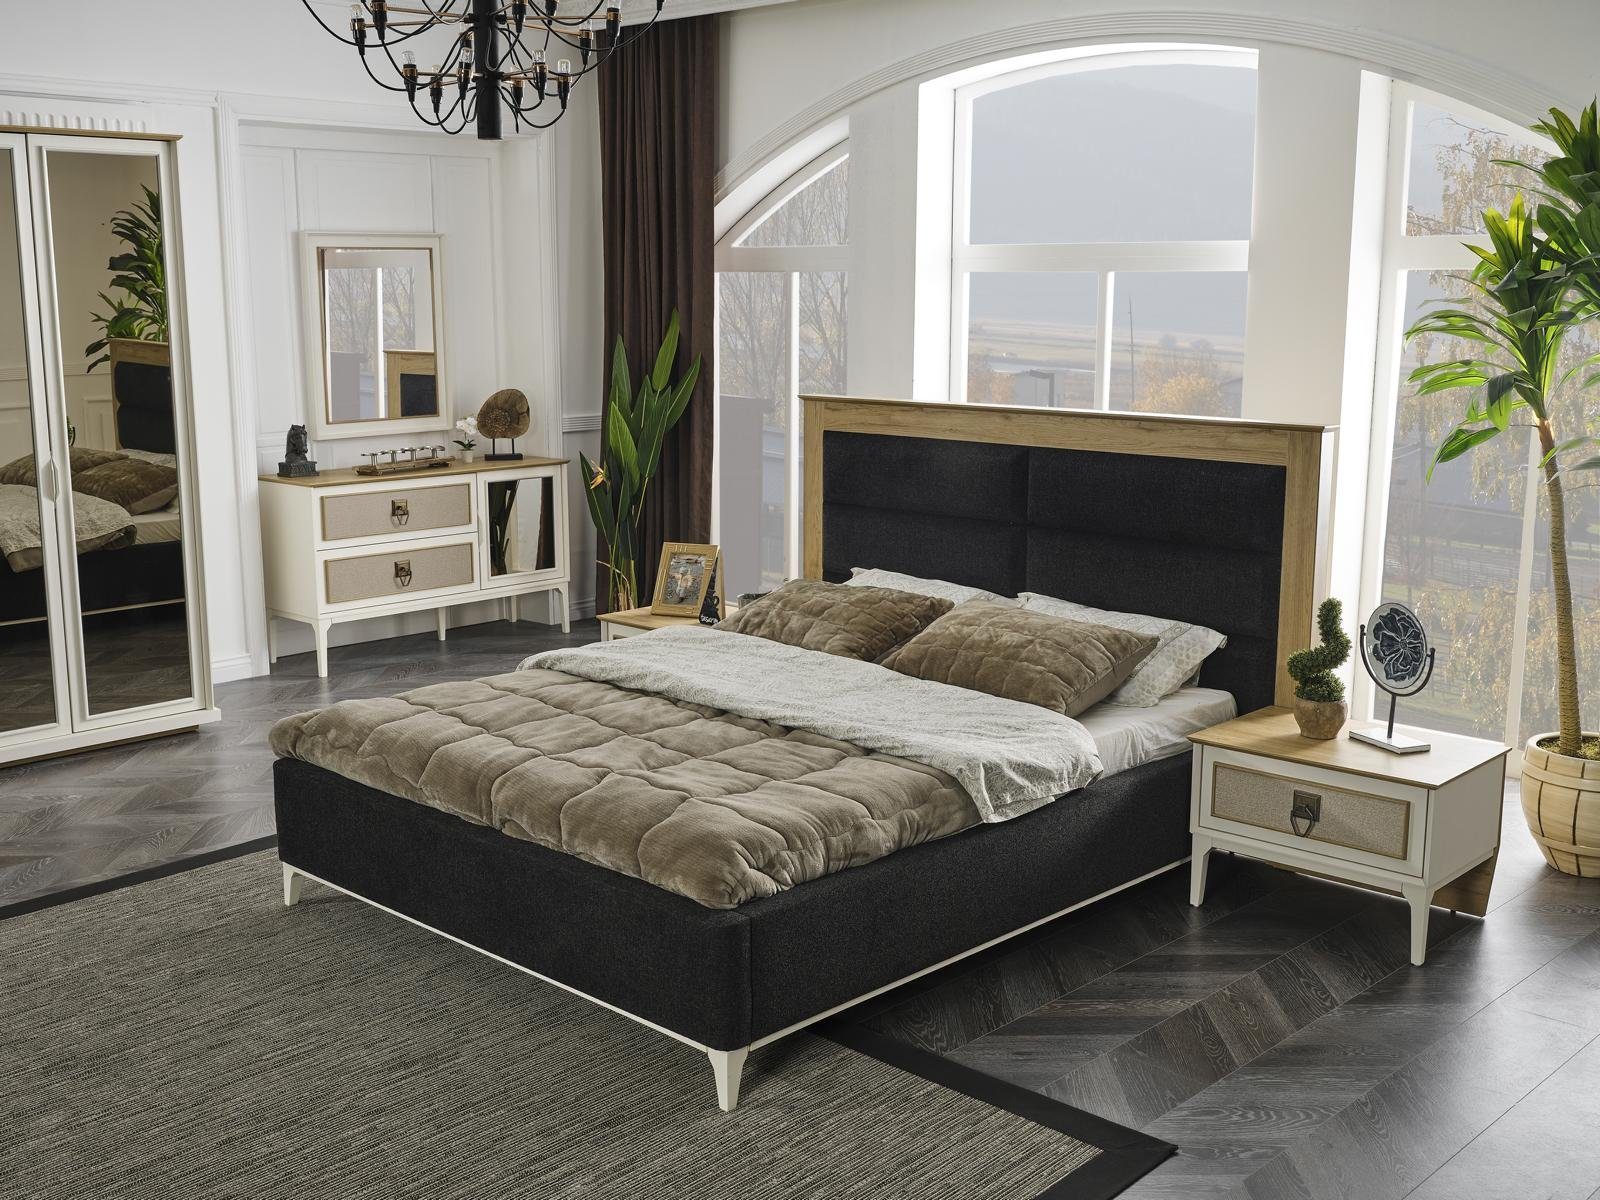 JVmoebel Doppelbett Bett (Bett) Möbel Einrichtung Polsterung Betten Bett